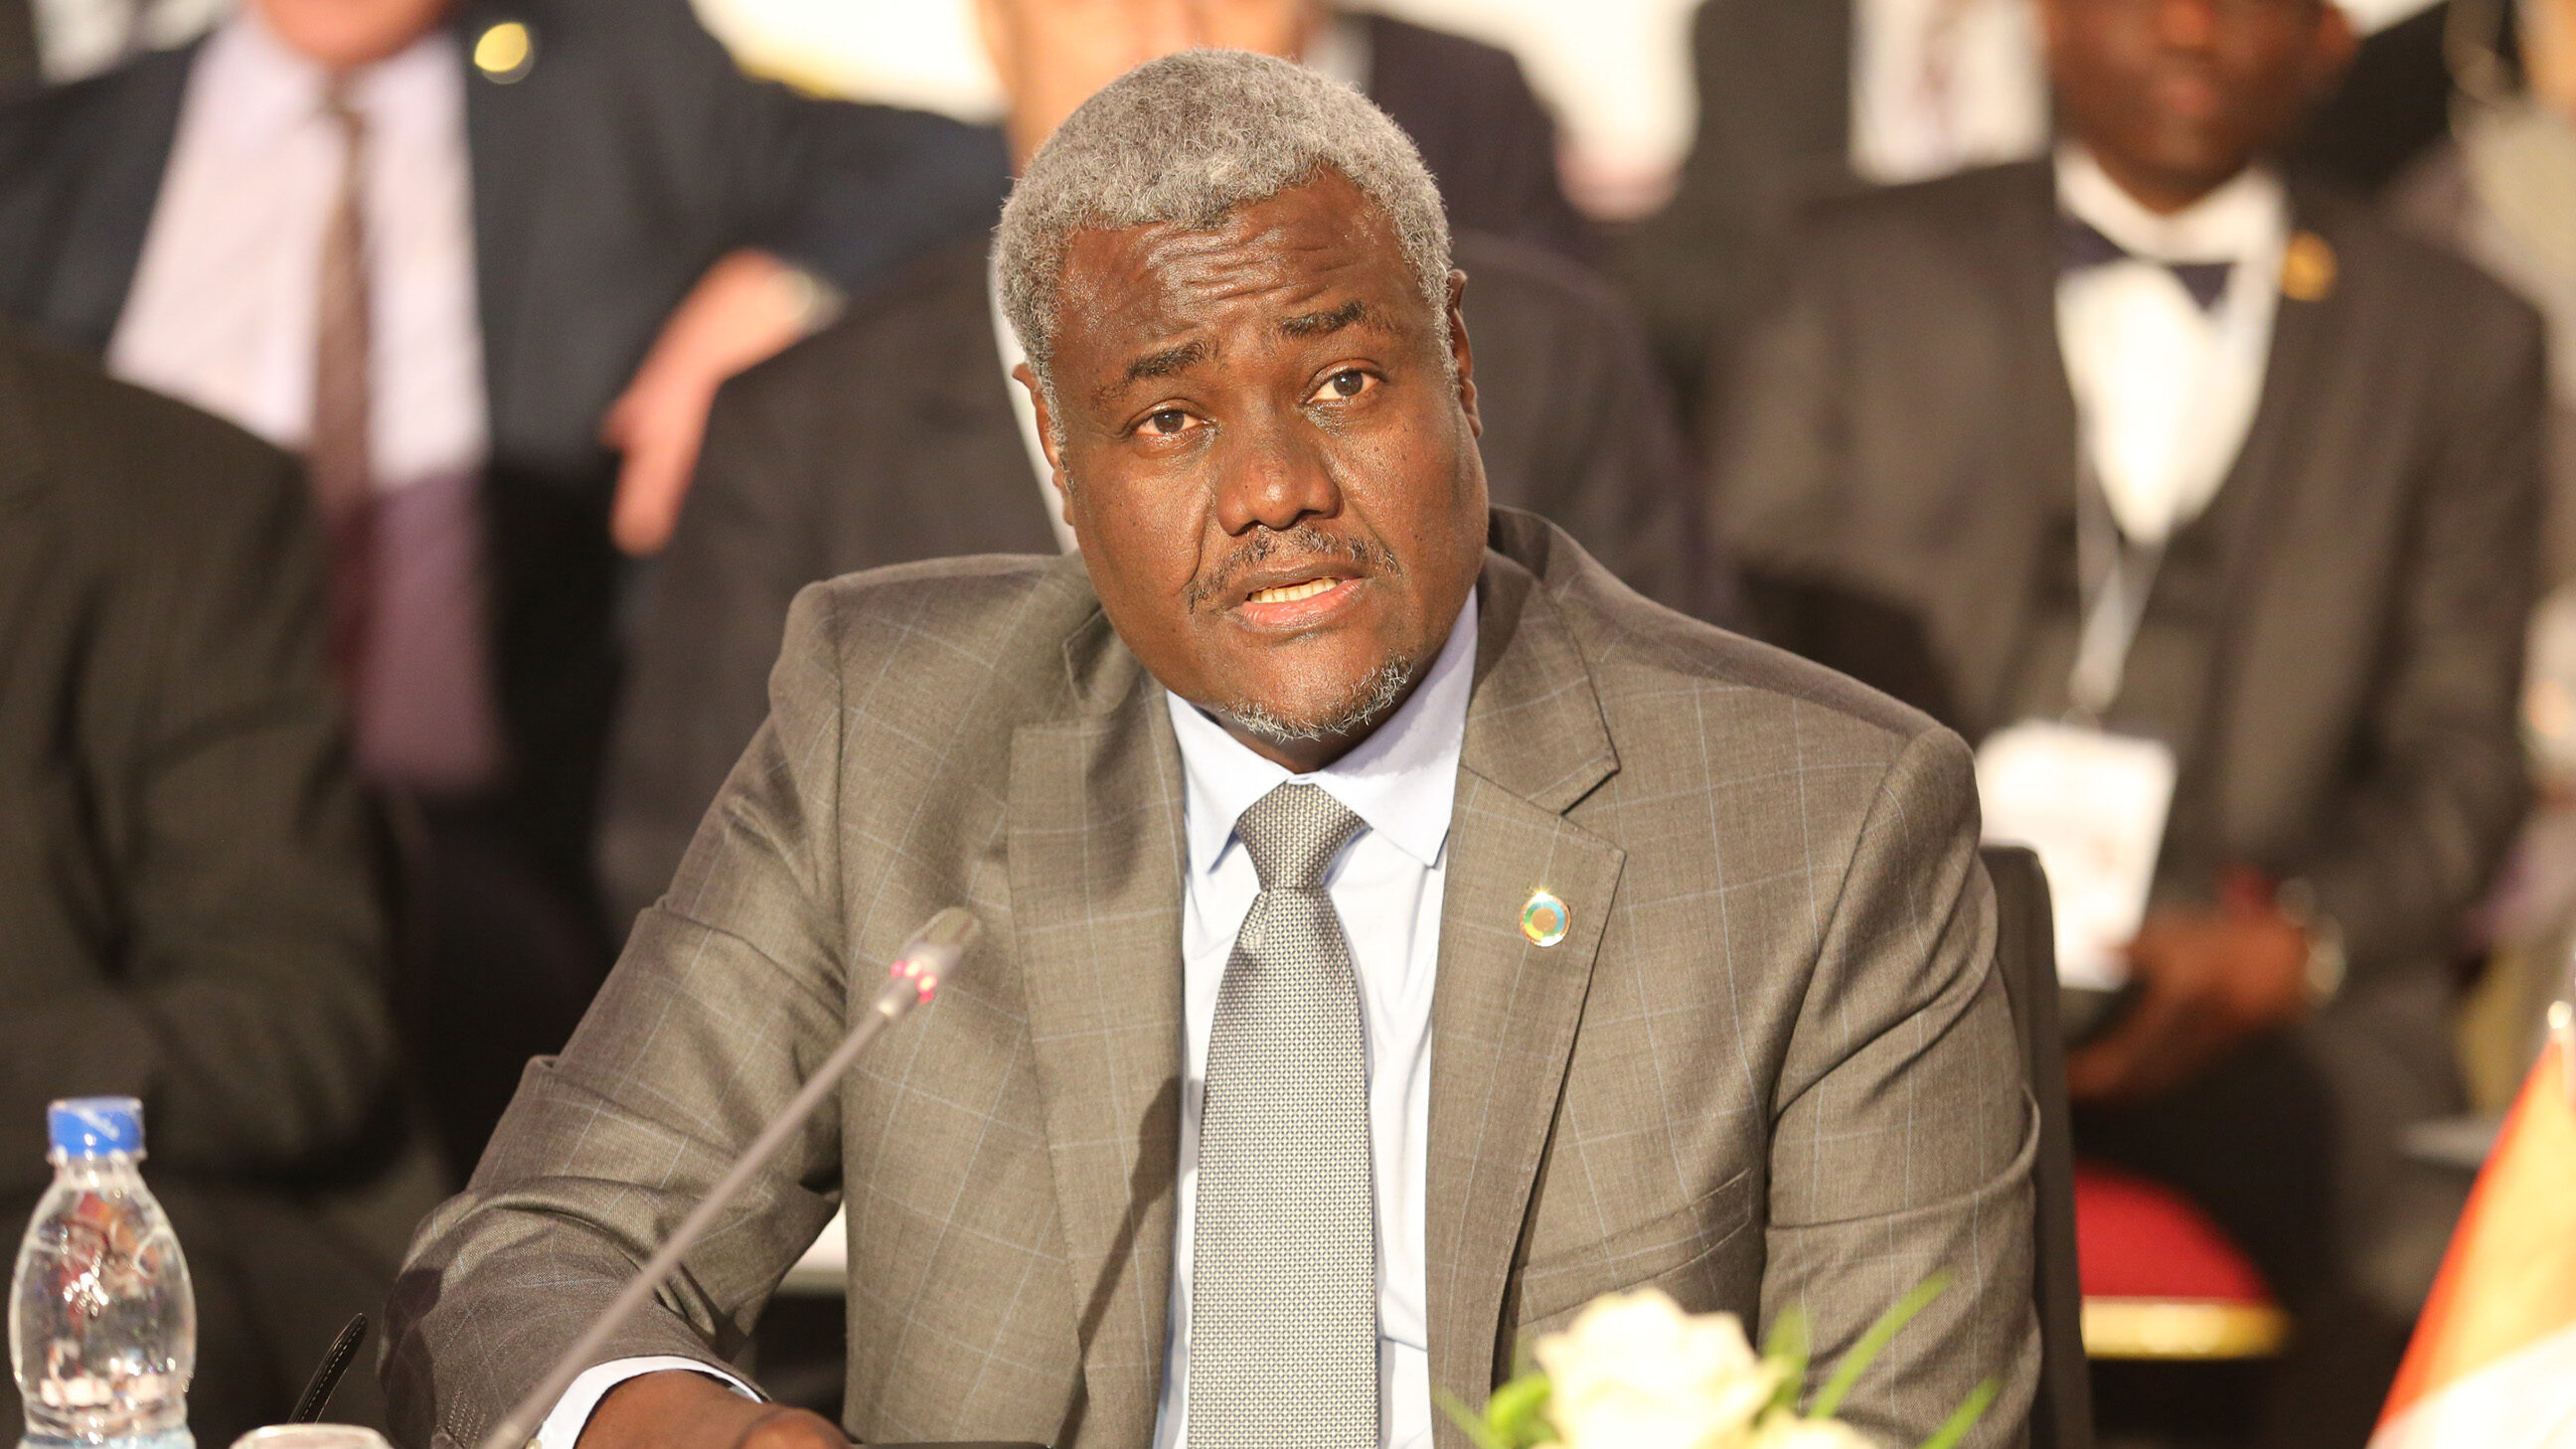 رئيس مفوضية الإتحاد الأفريقي، يعرب قلقه جراء التطورات التي تحدث في المنطقة